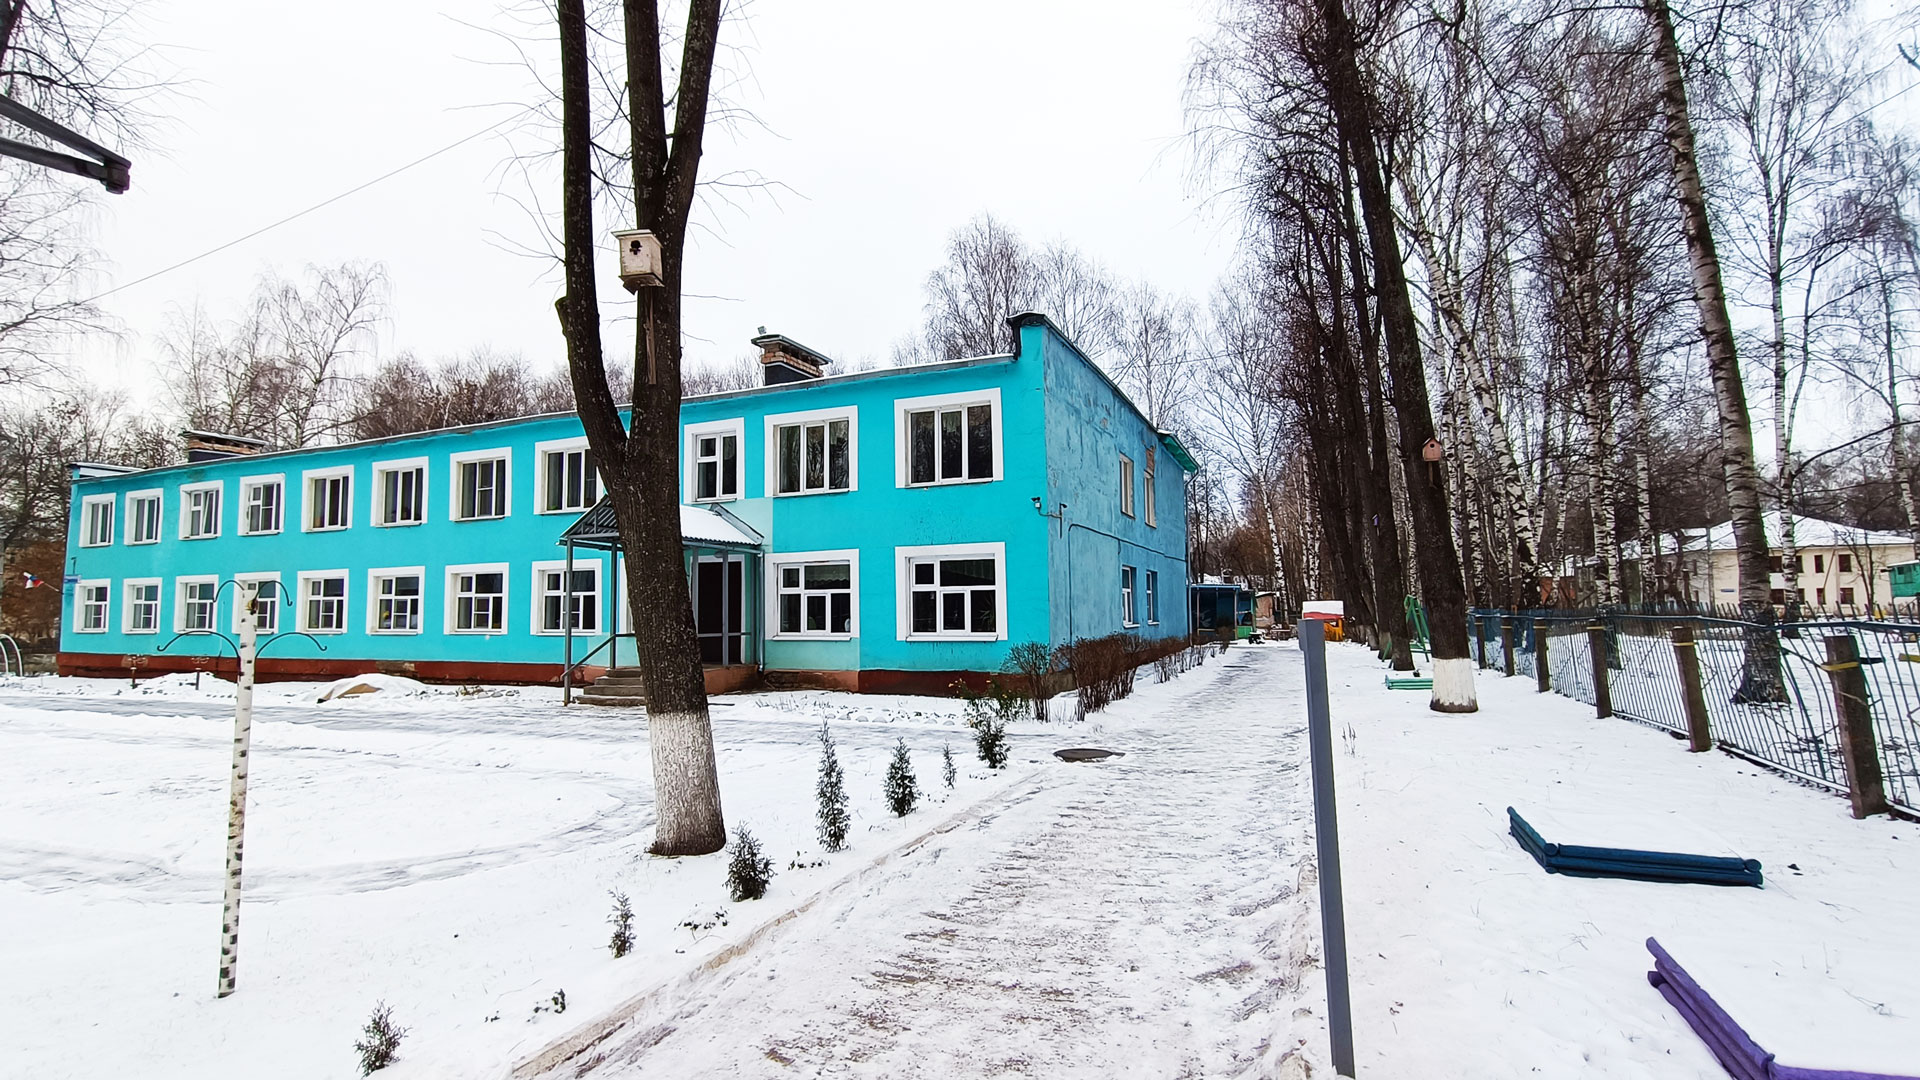 Детский сад 176 Ярославль: общий вид здания.